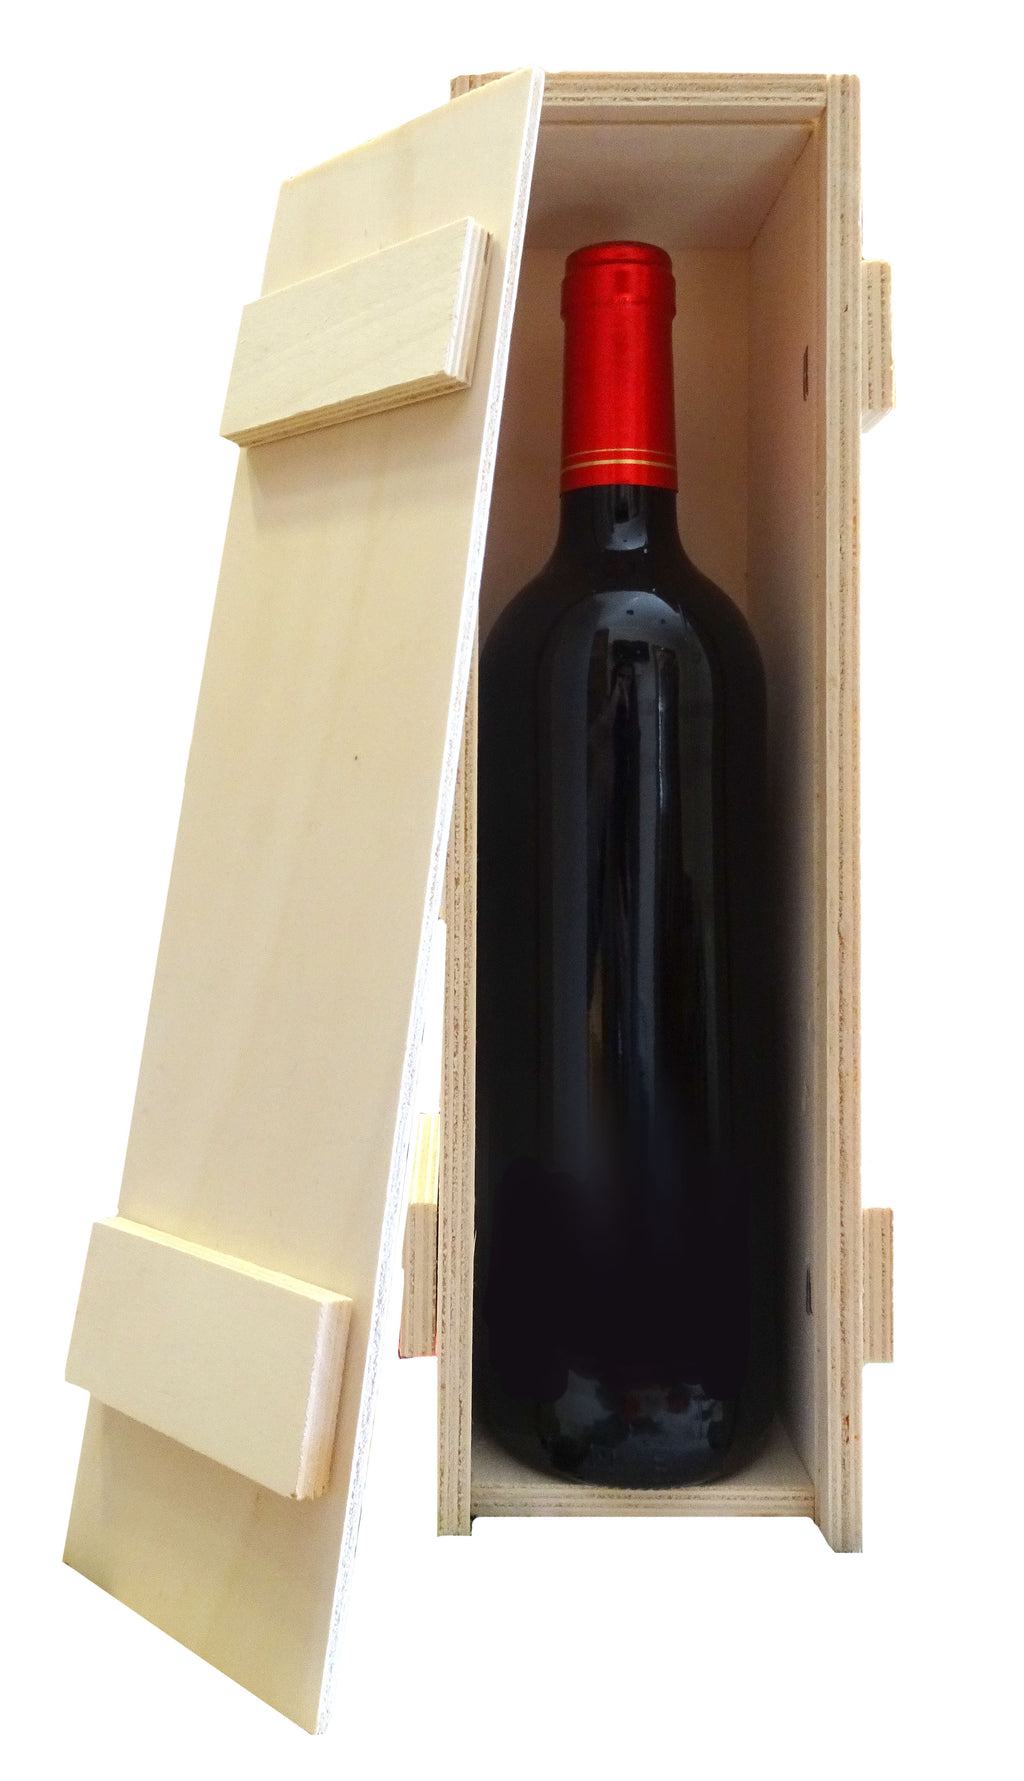 Caja de madera con 1 botella de vino denominación de origen Jumilla alante - Delampa